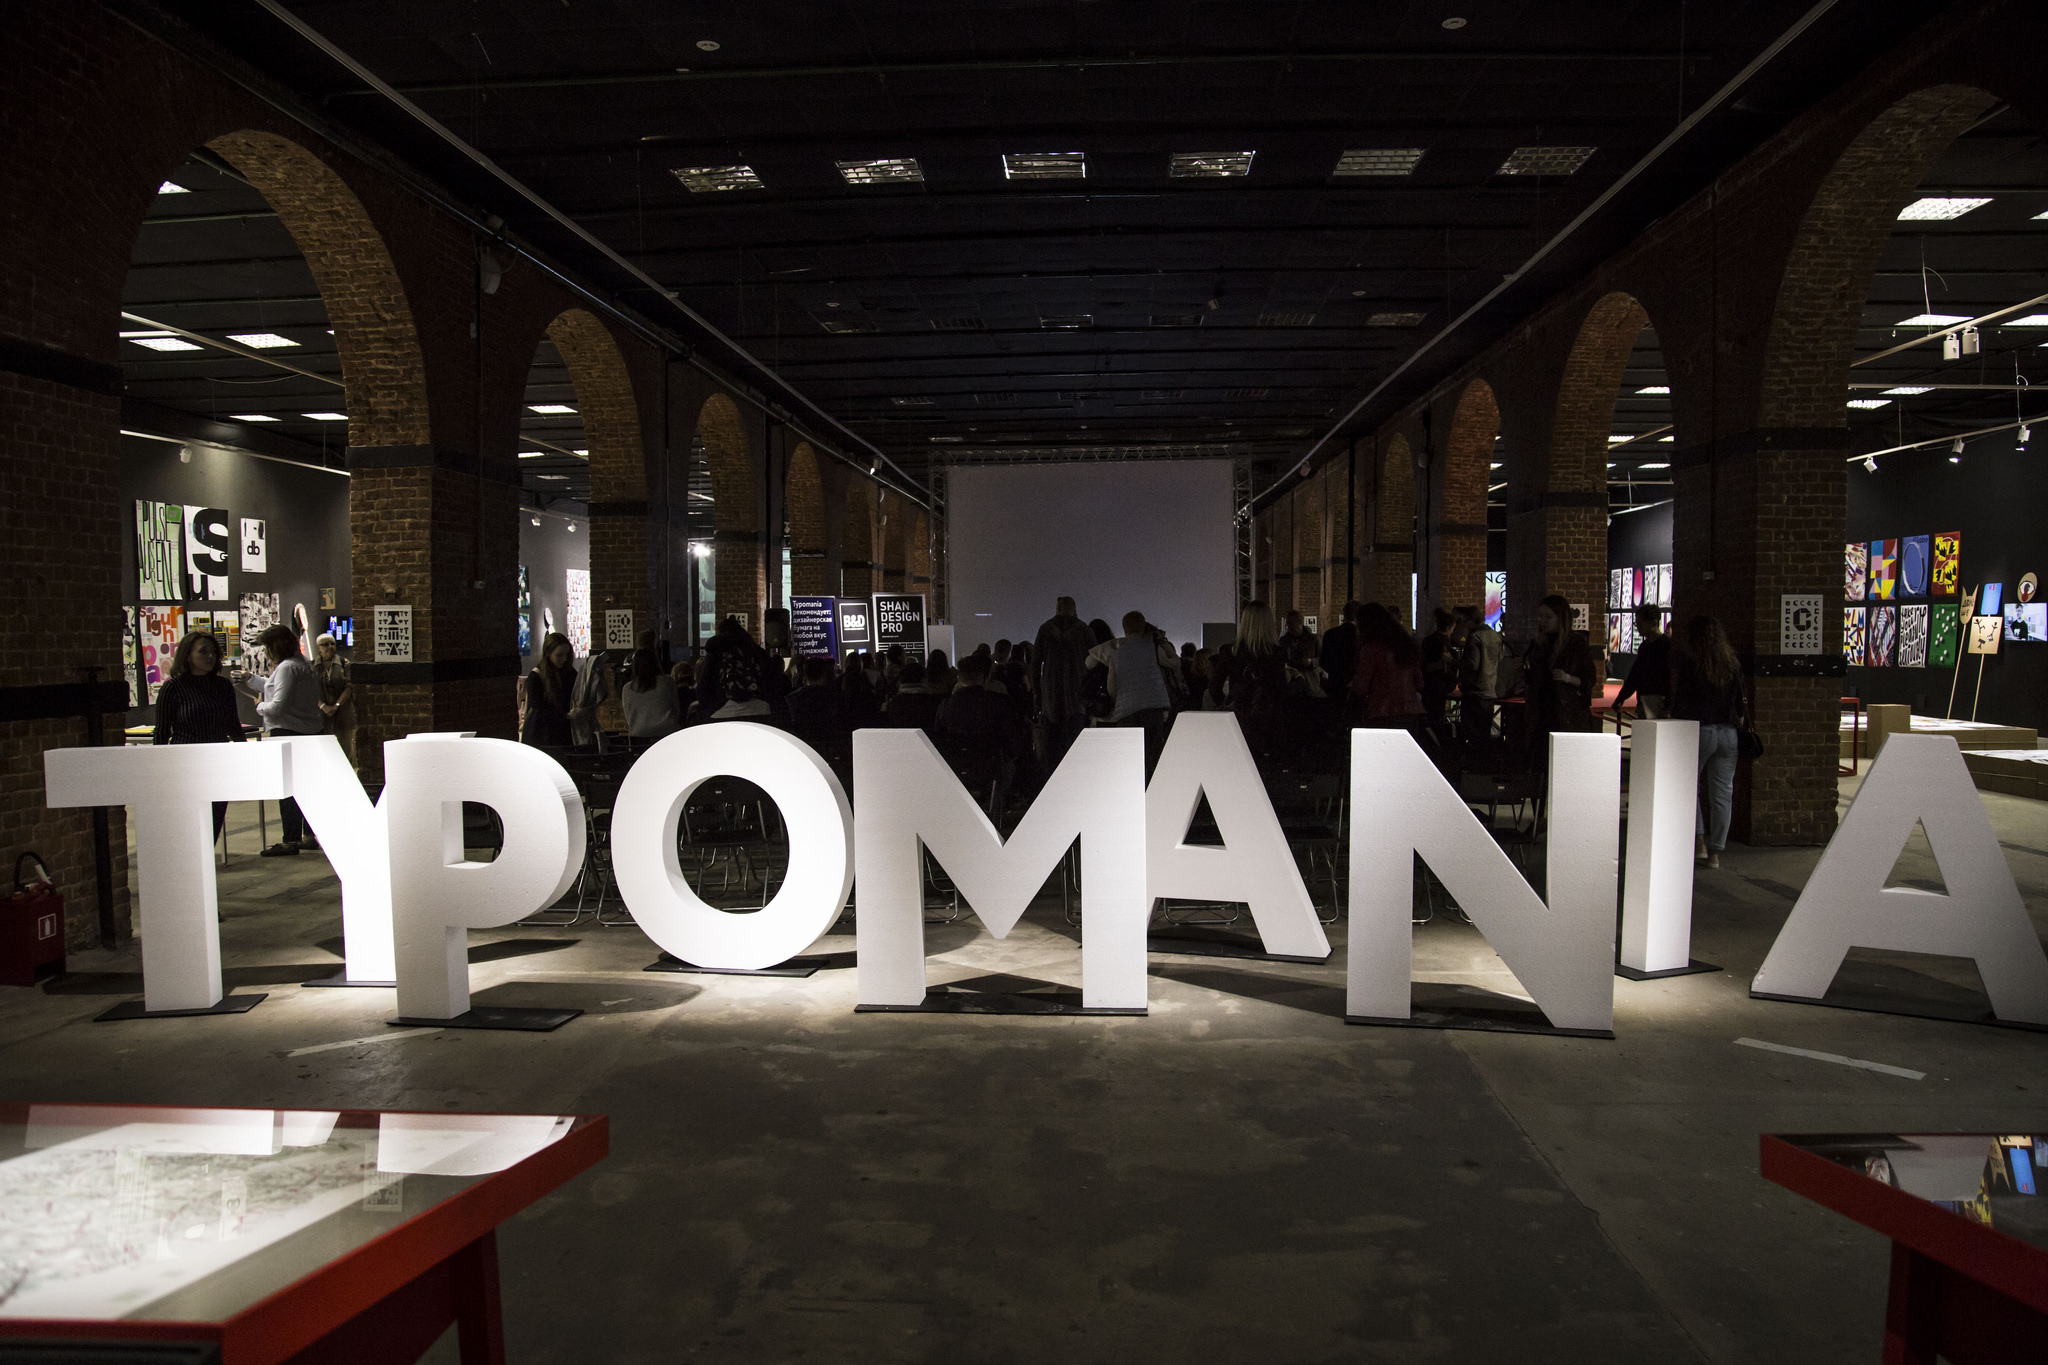 Фестиваль Typomania объявил основную программу, фото